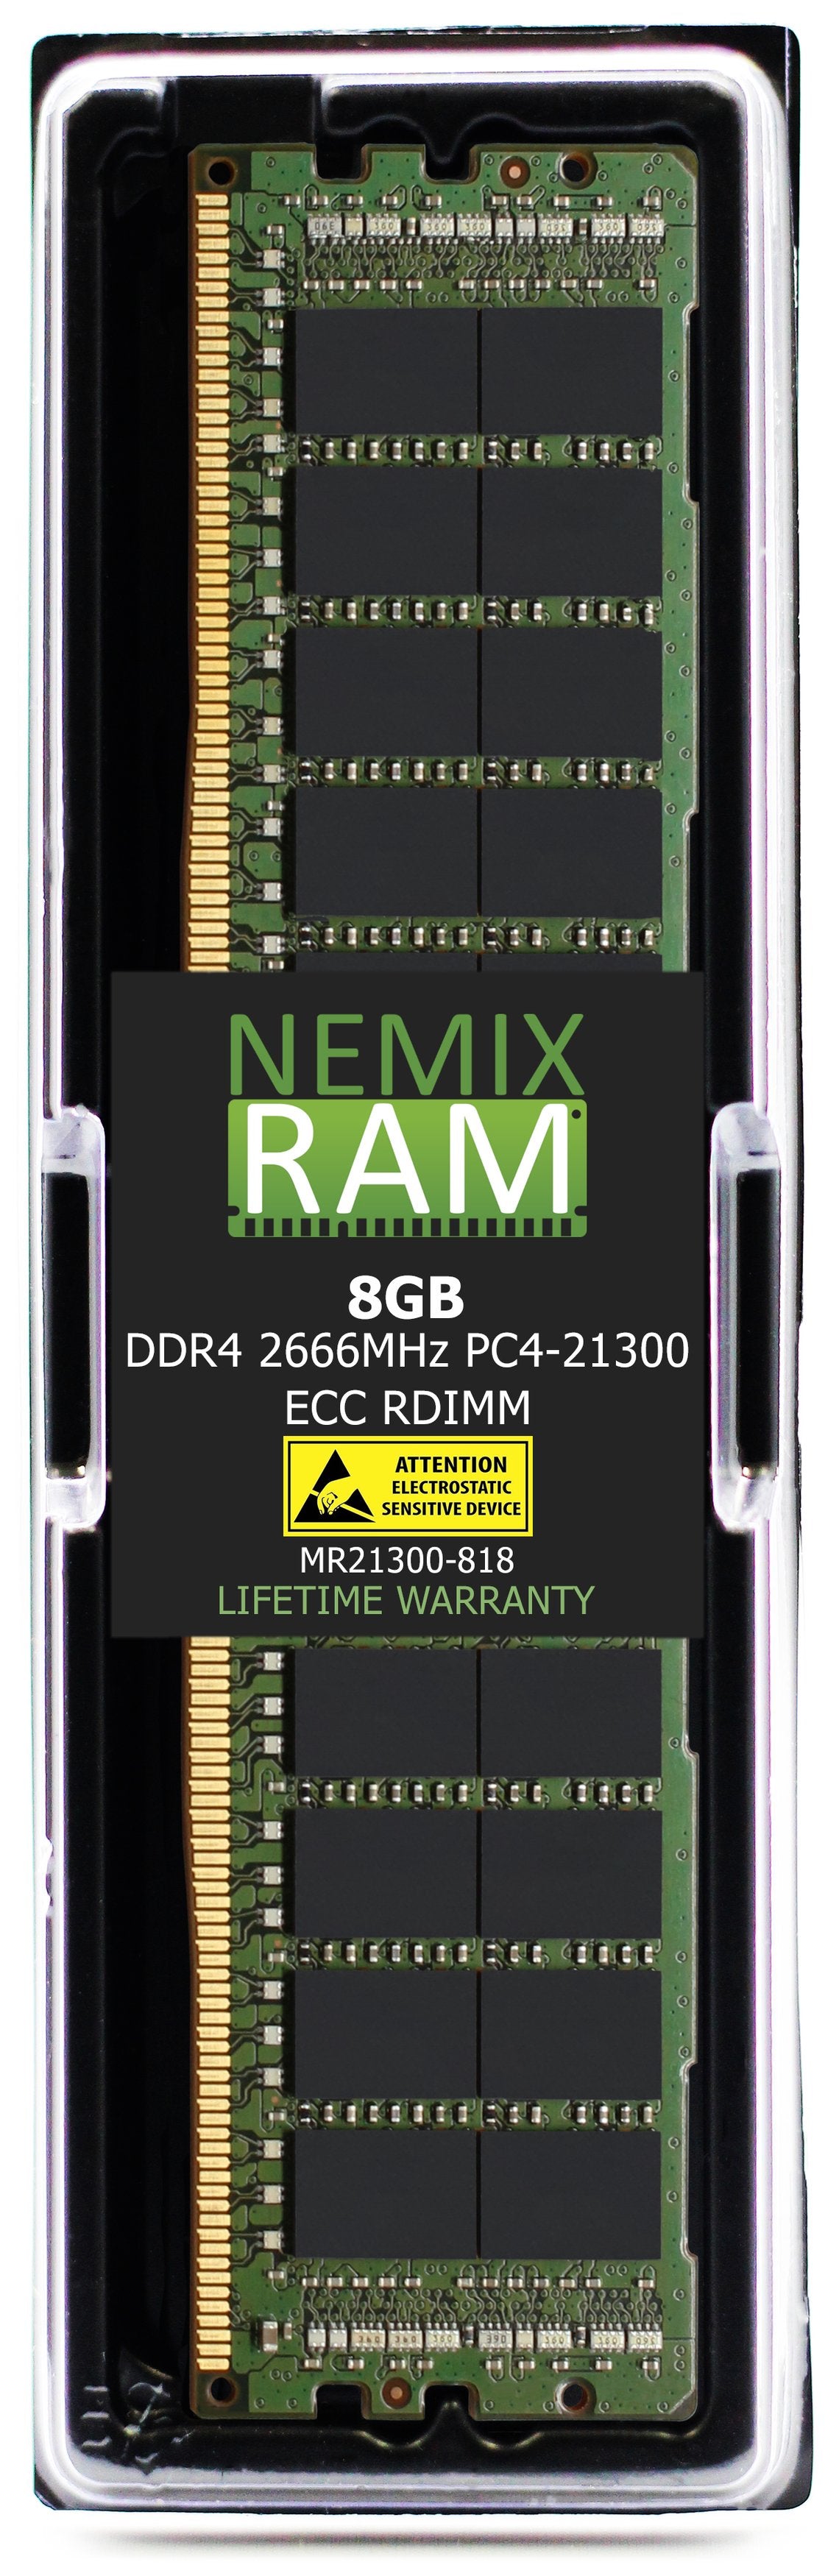 Hynix HMA81GR7MFR8N-VK 8GB DDR4 2666MHZ PC4-21300 RDIMM Compatible Memory Module